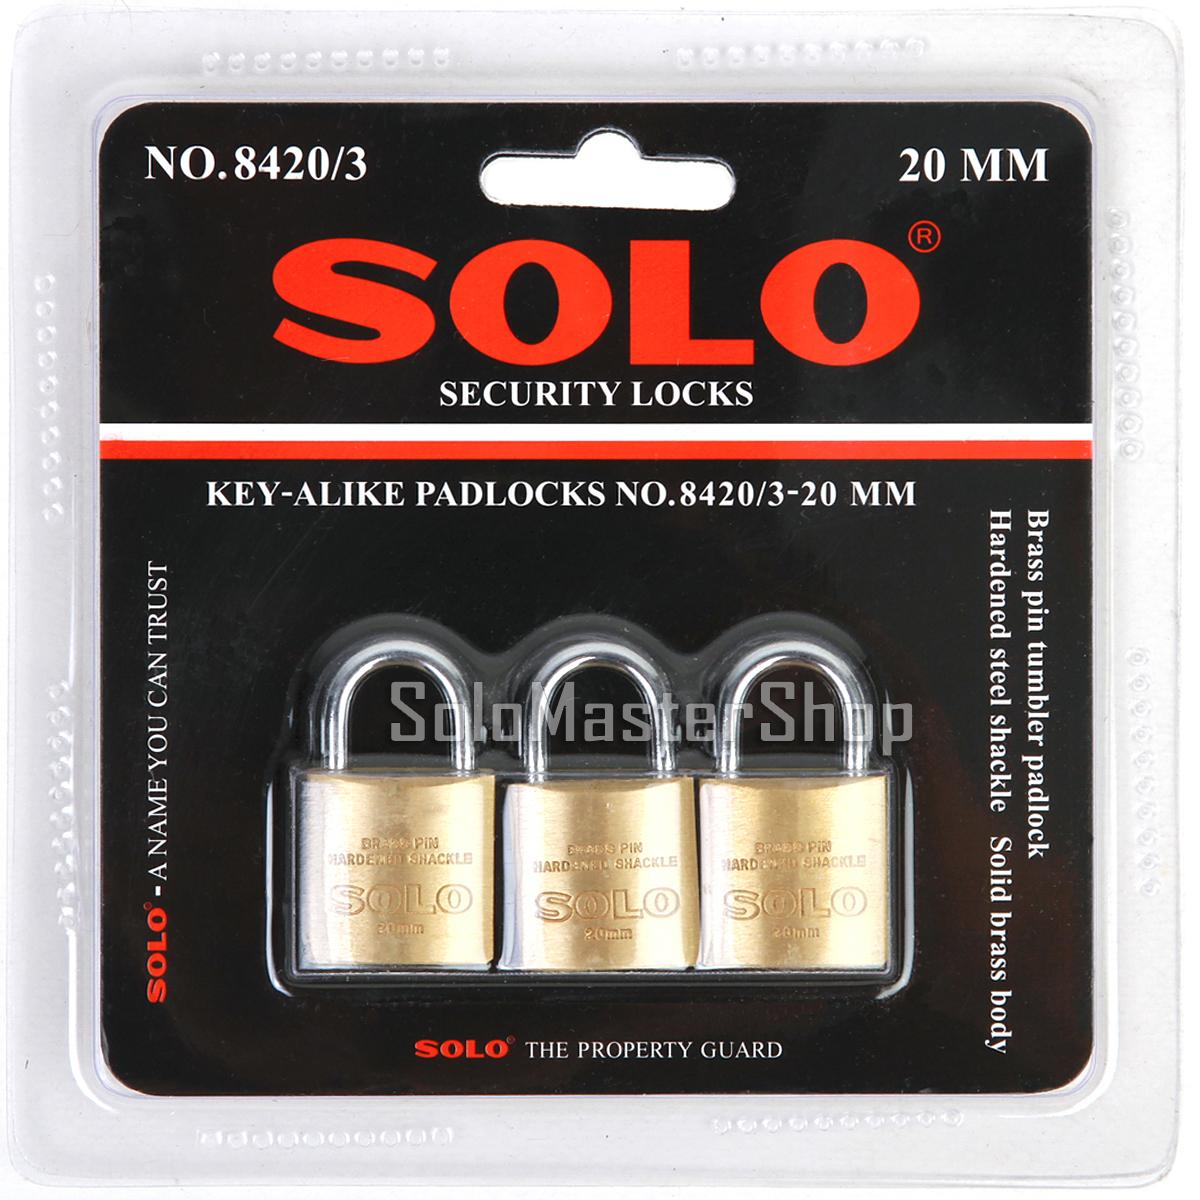 SOLO กุญแจล็อคกระเป๋า กระเป๋าเดินทาง ล็อคเกอร์ แบบคีย์อะไลค์ (พกกุญแจดอกเดียวใช้ไขได้ทุกตัว) 3 ตัว/ชุด ขนาด 20 มม. No.8420/3 - ของแท้ พร้อมส่ง